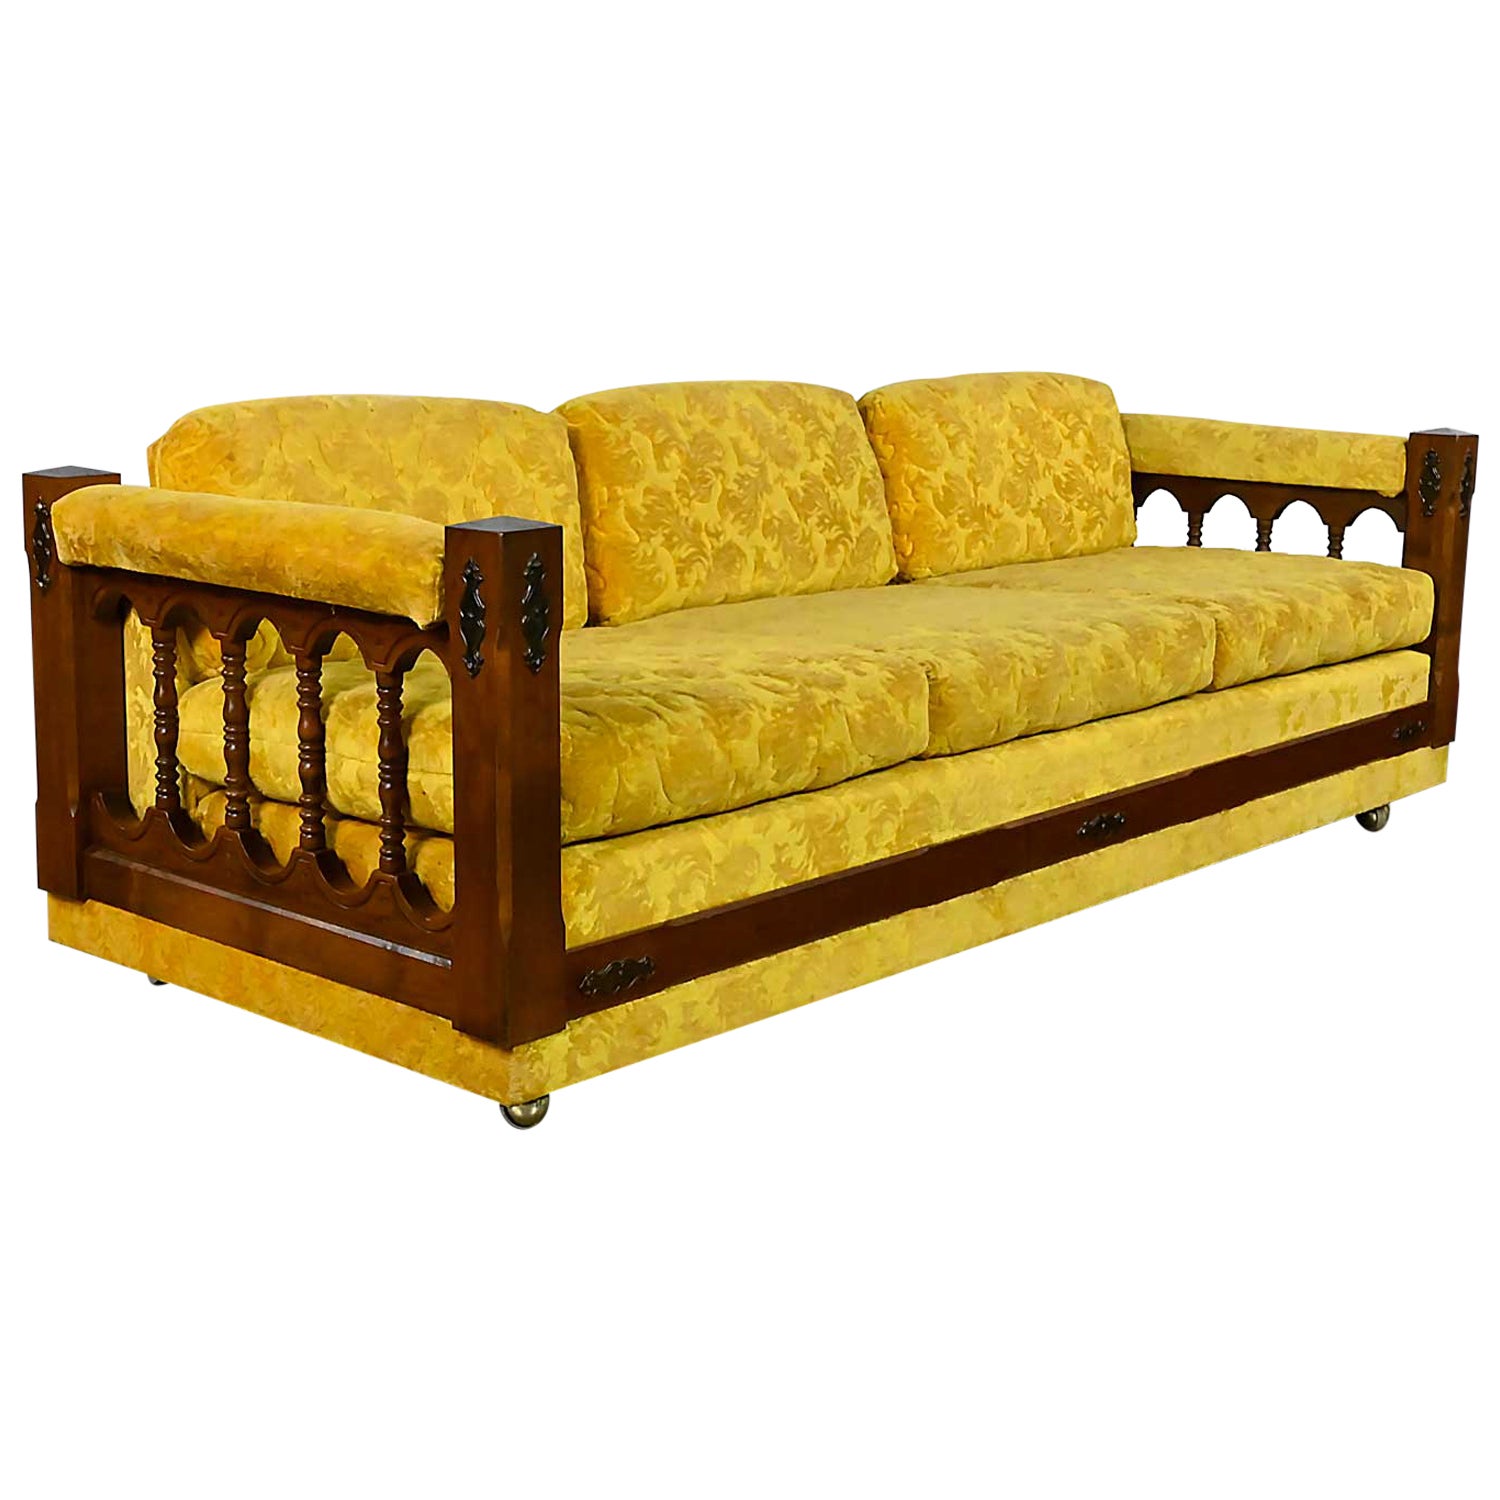 Canapé en tissu texturé doré de style néo-espagnol vintage tourné avec côtés en fuseau en vente